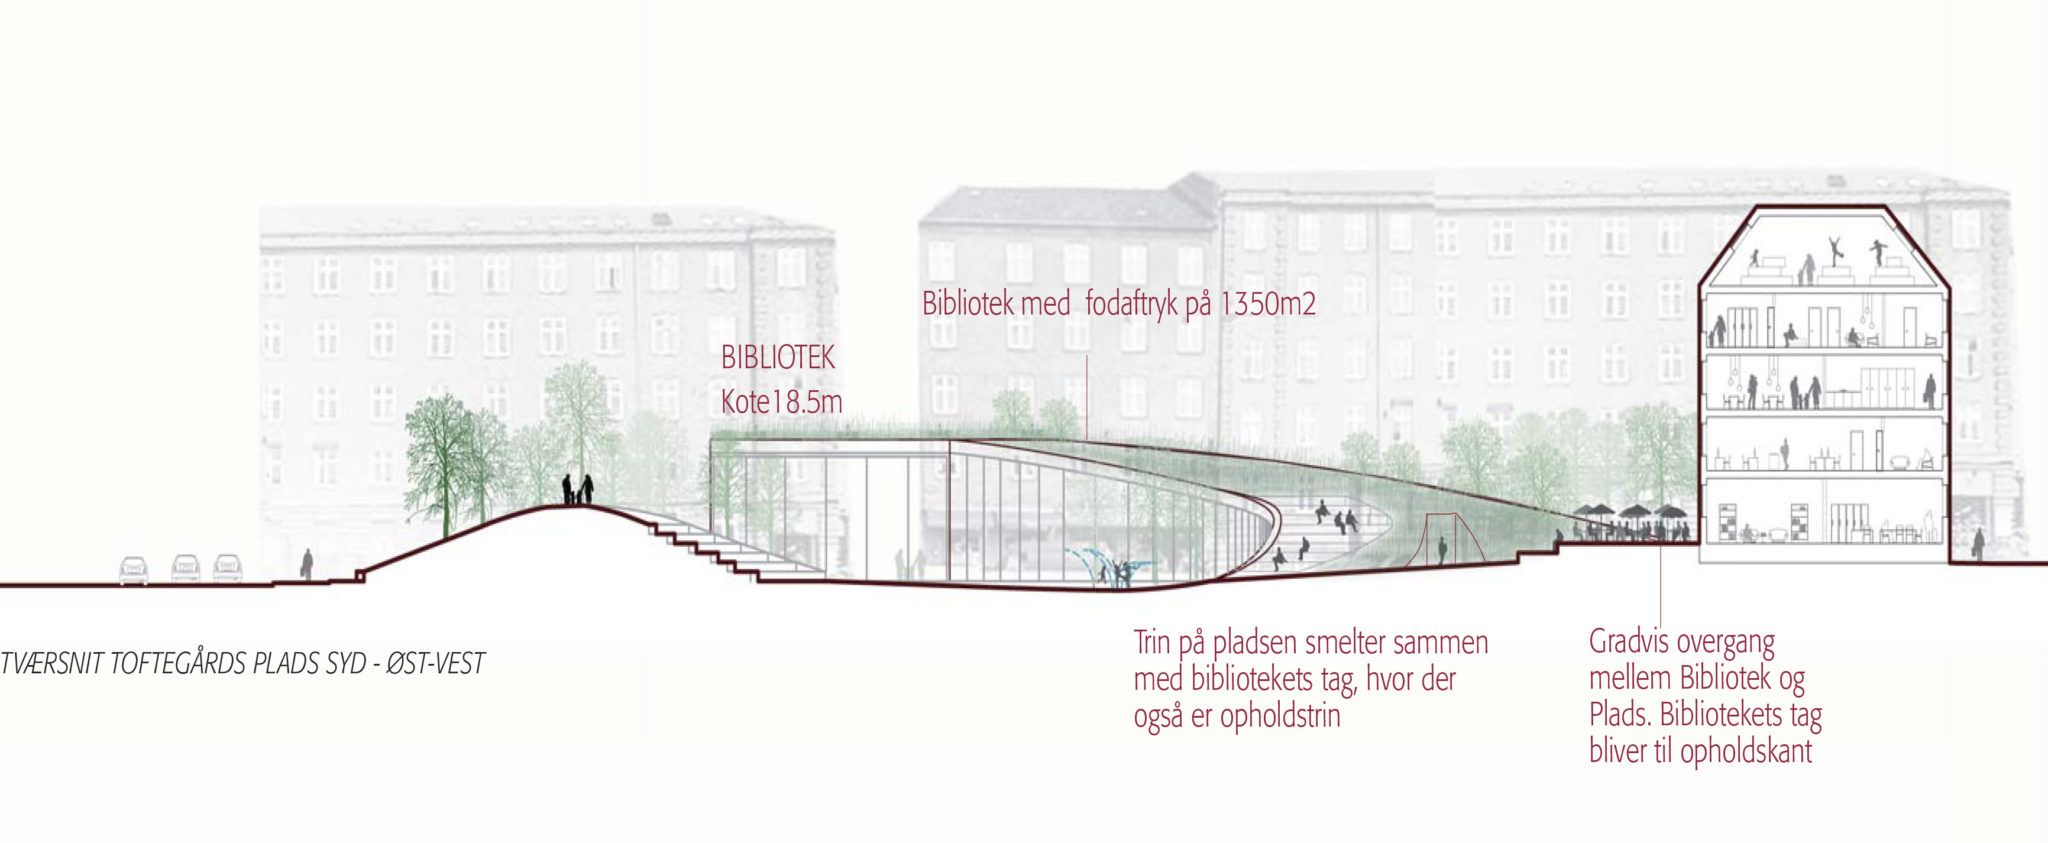 Tværsnit variant B Valby Bibliotek Toftegårds Plads